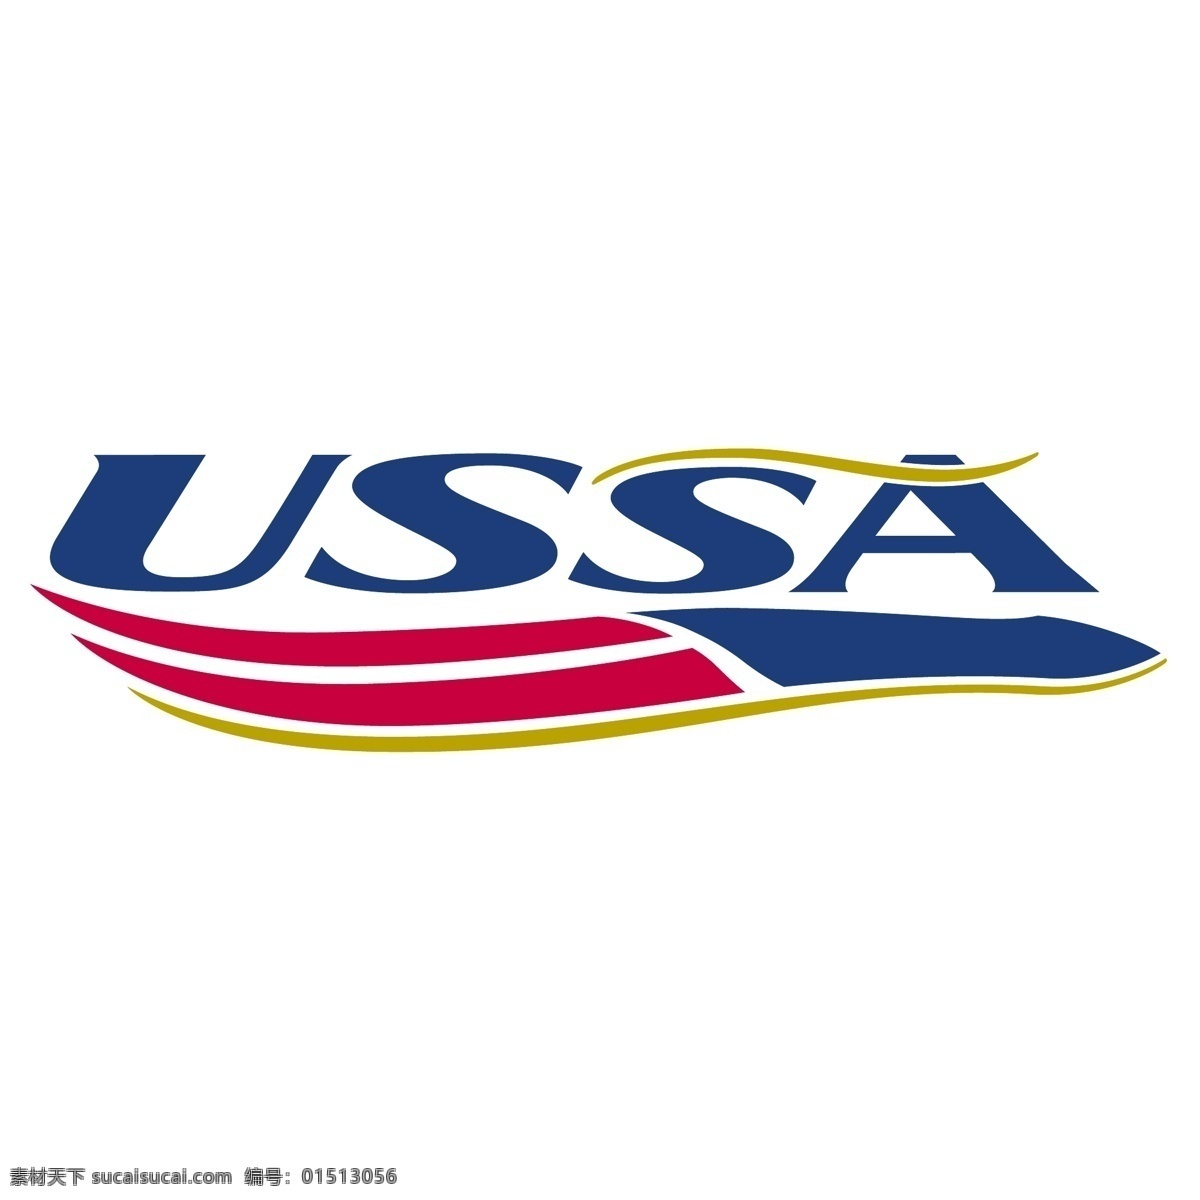 ussa 时尚 logo 时尚logo 标签 英文logo 白色